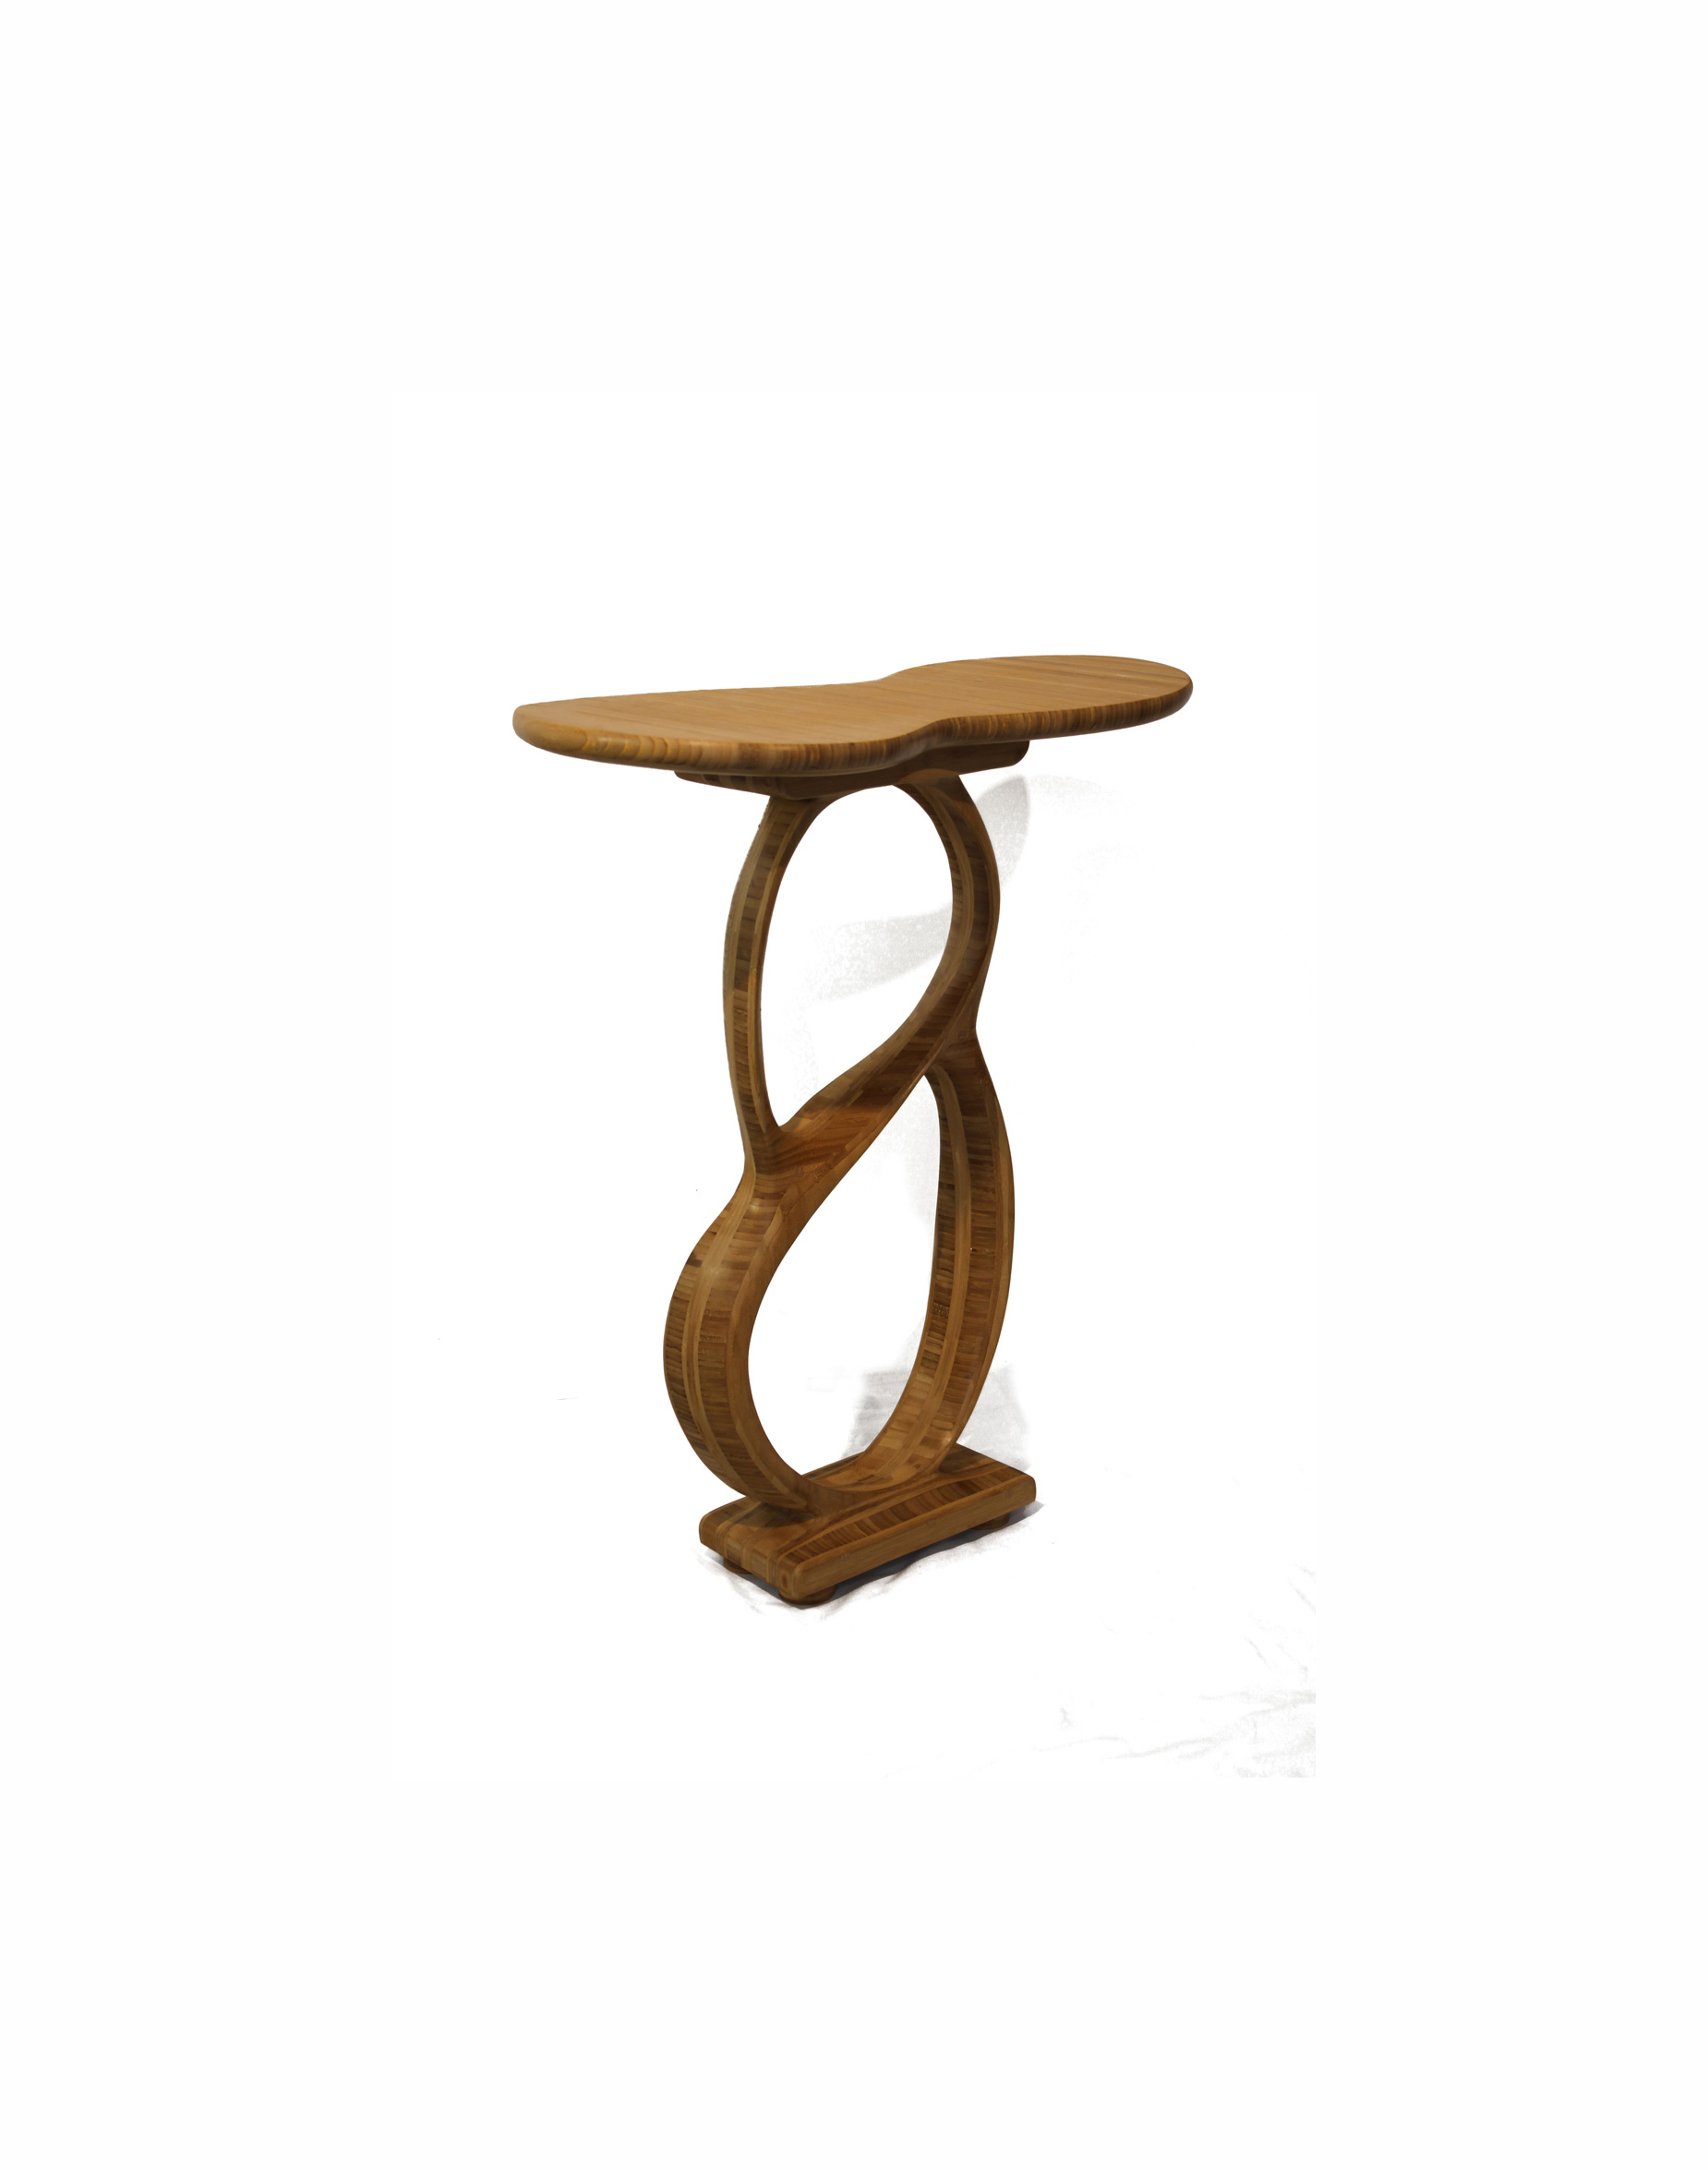 Table Meuble en bois bambou - le huit de Moebius Patrick Bloch Le serpent de bois